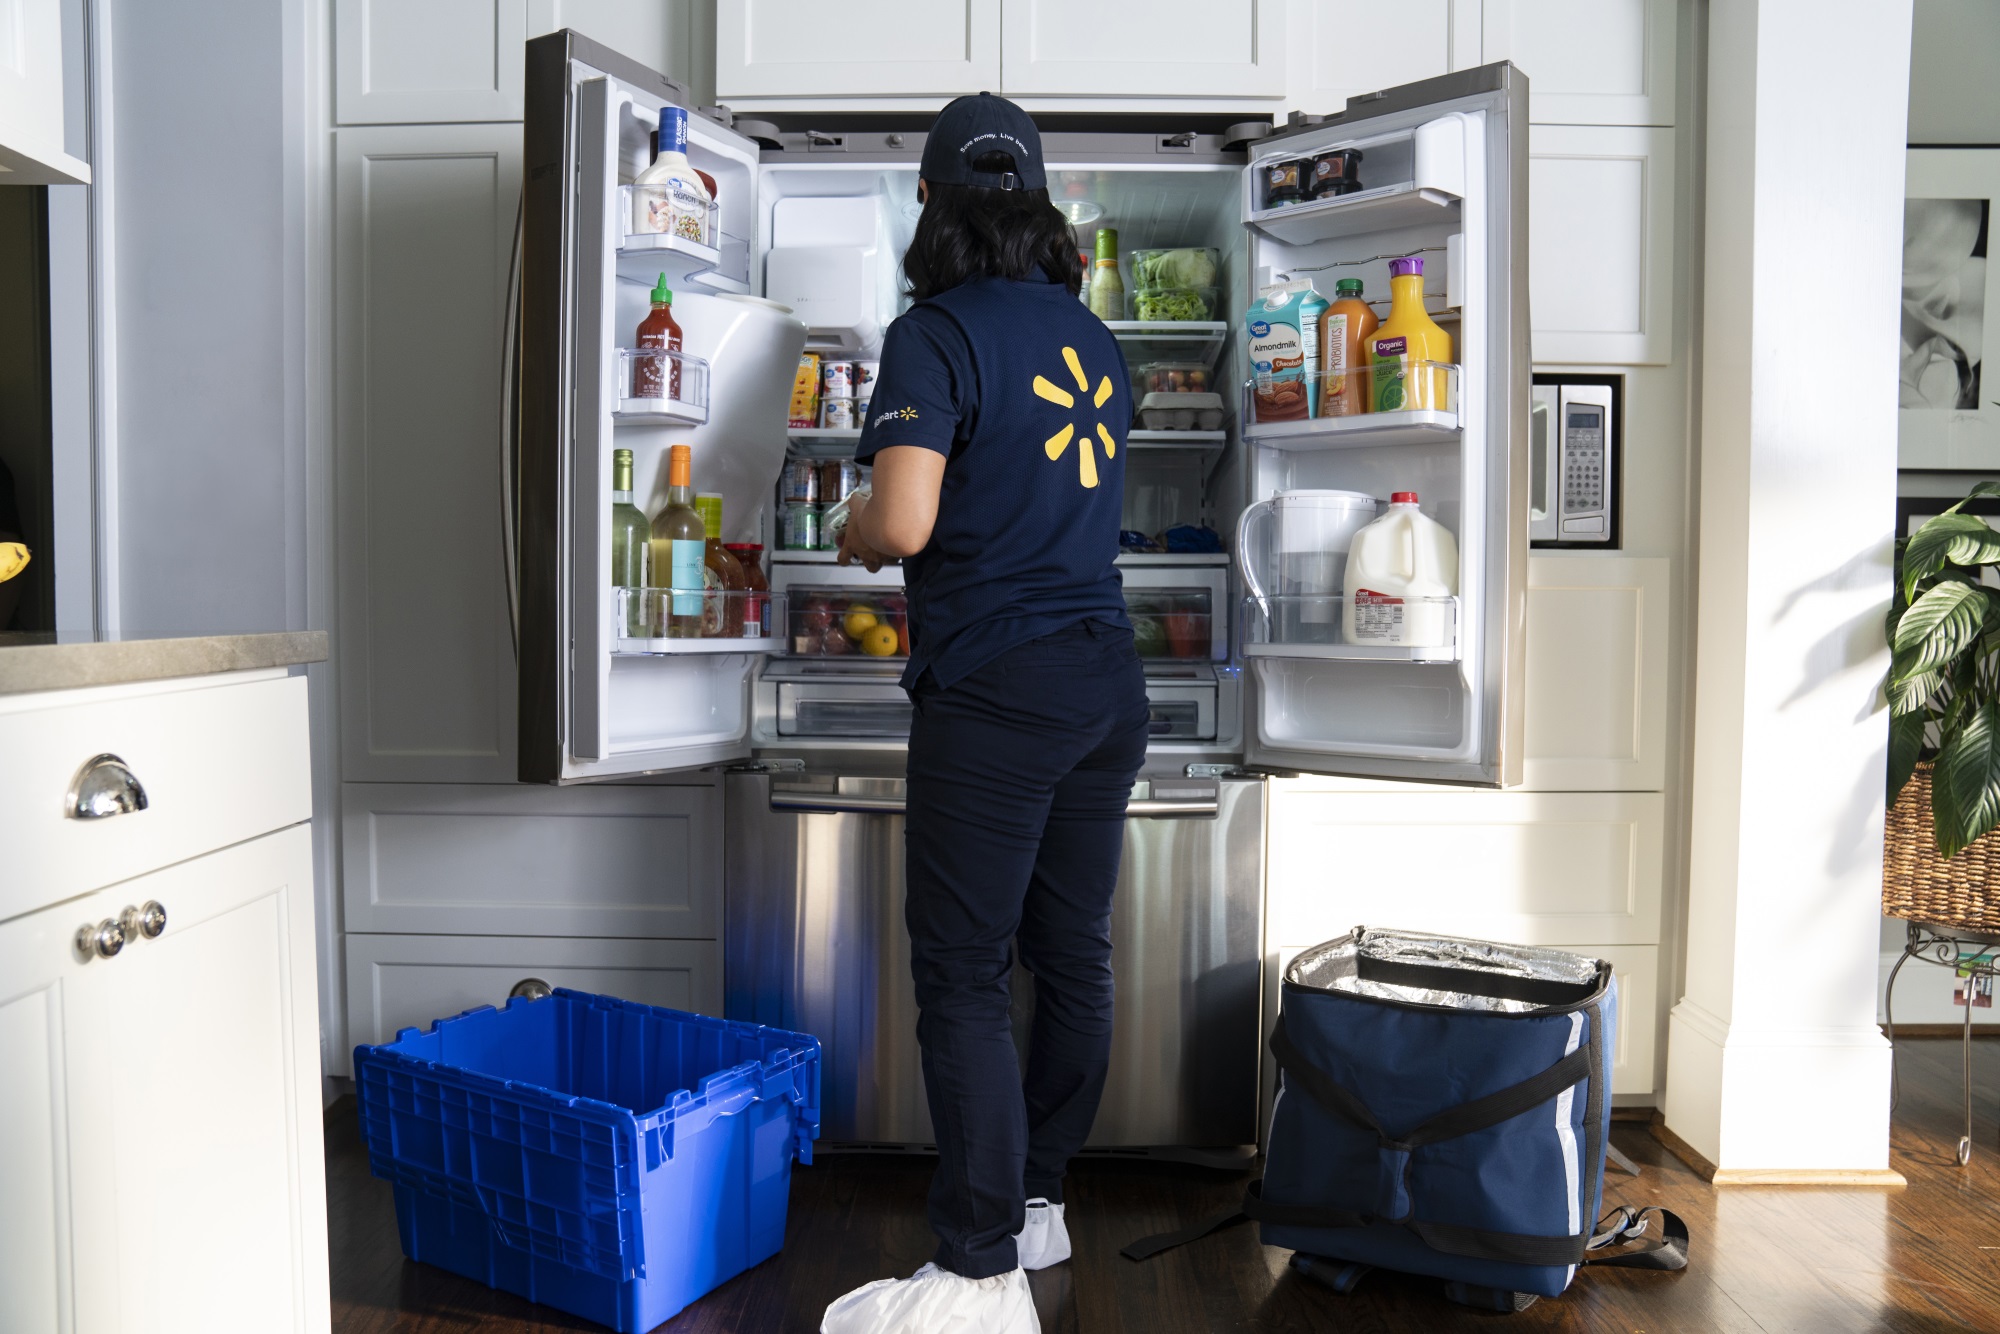 Em disputa com Amazon, Walmart leva compras da loja para a geladeira